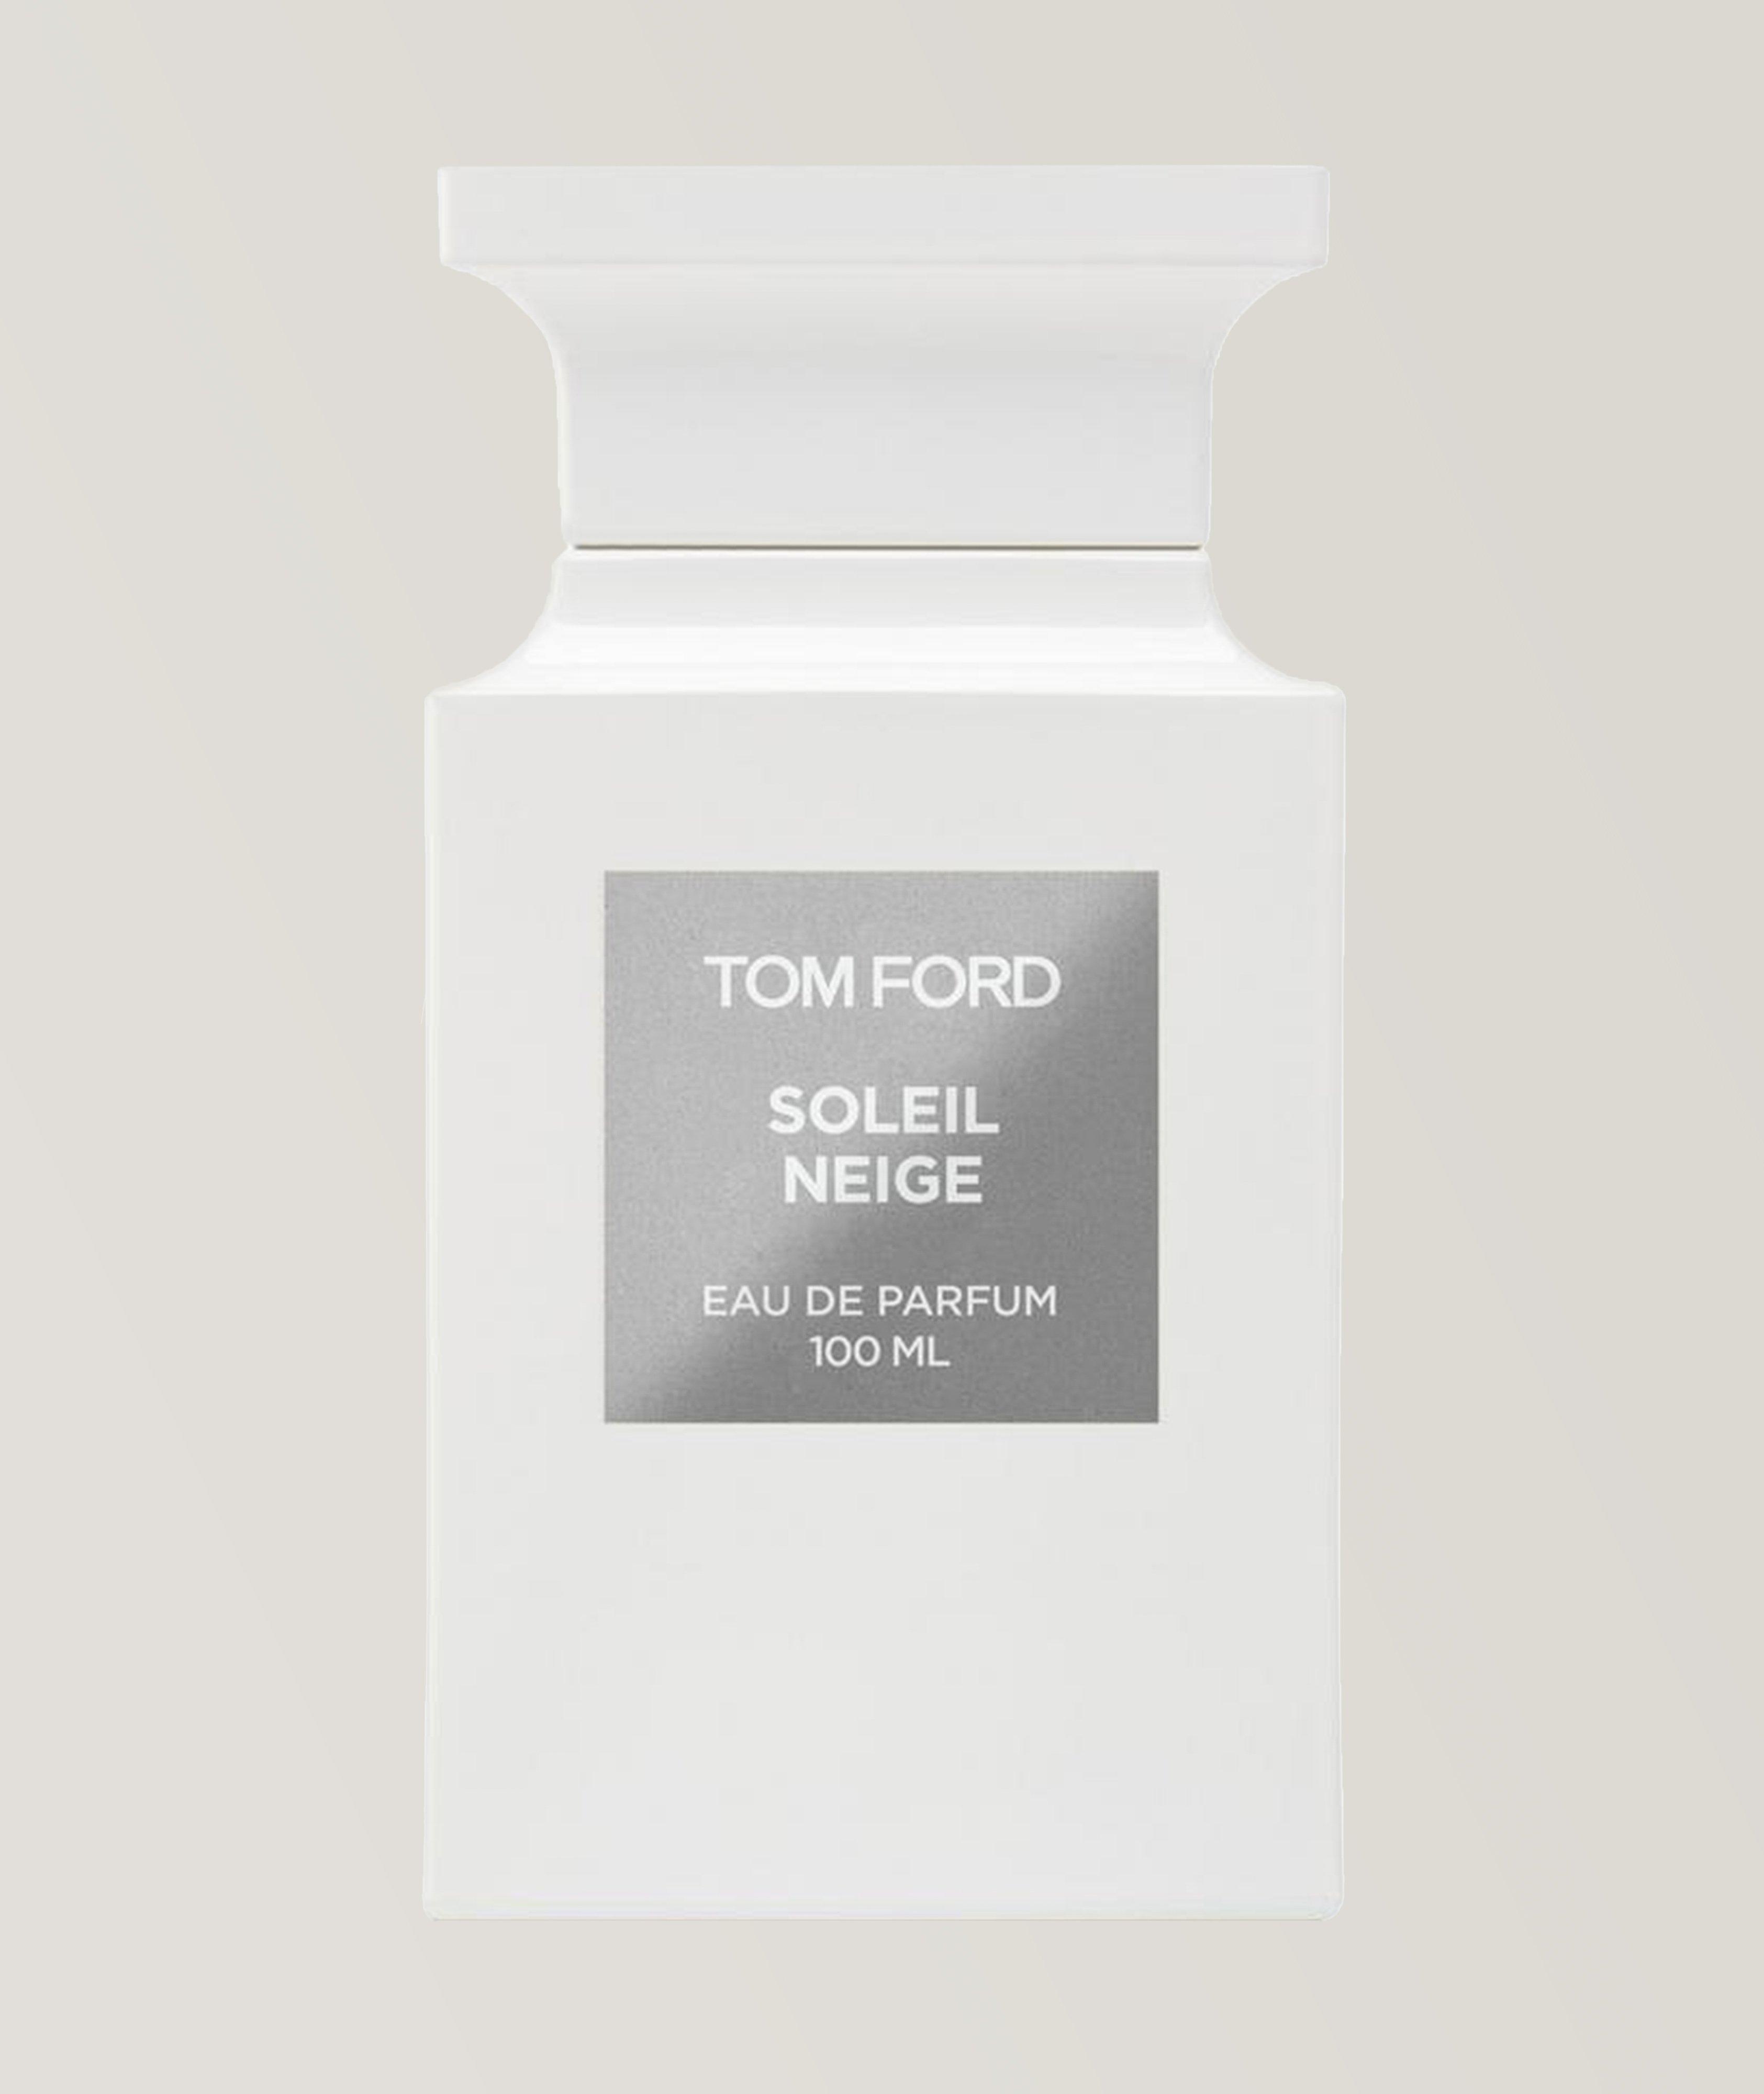 TOM FORD Eau de parfum Soleil neige (100 ml)